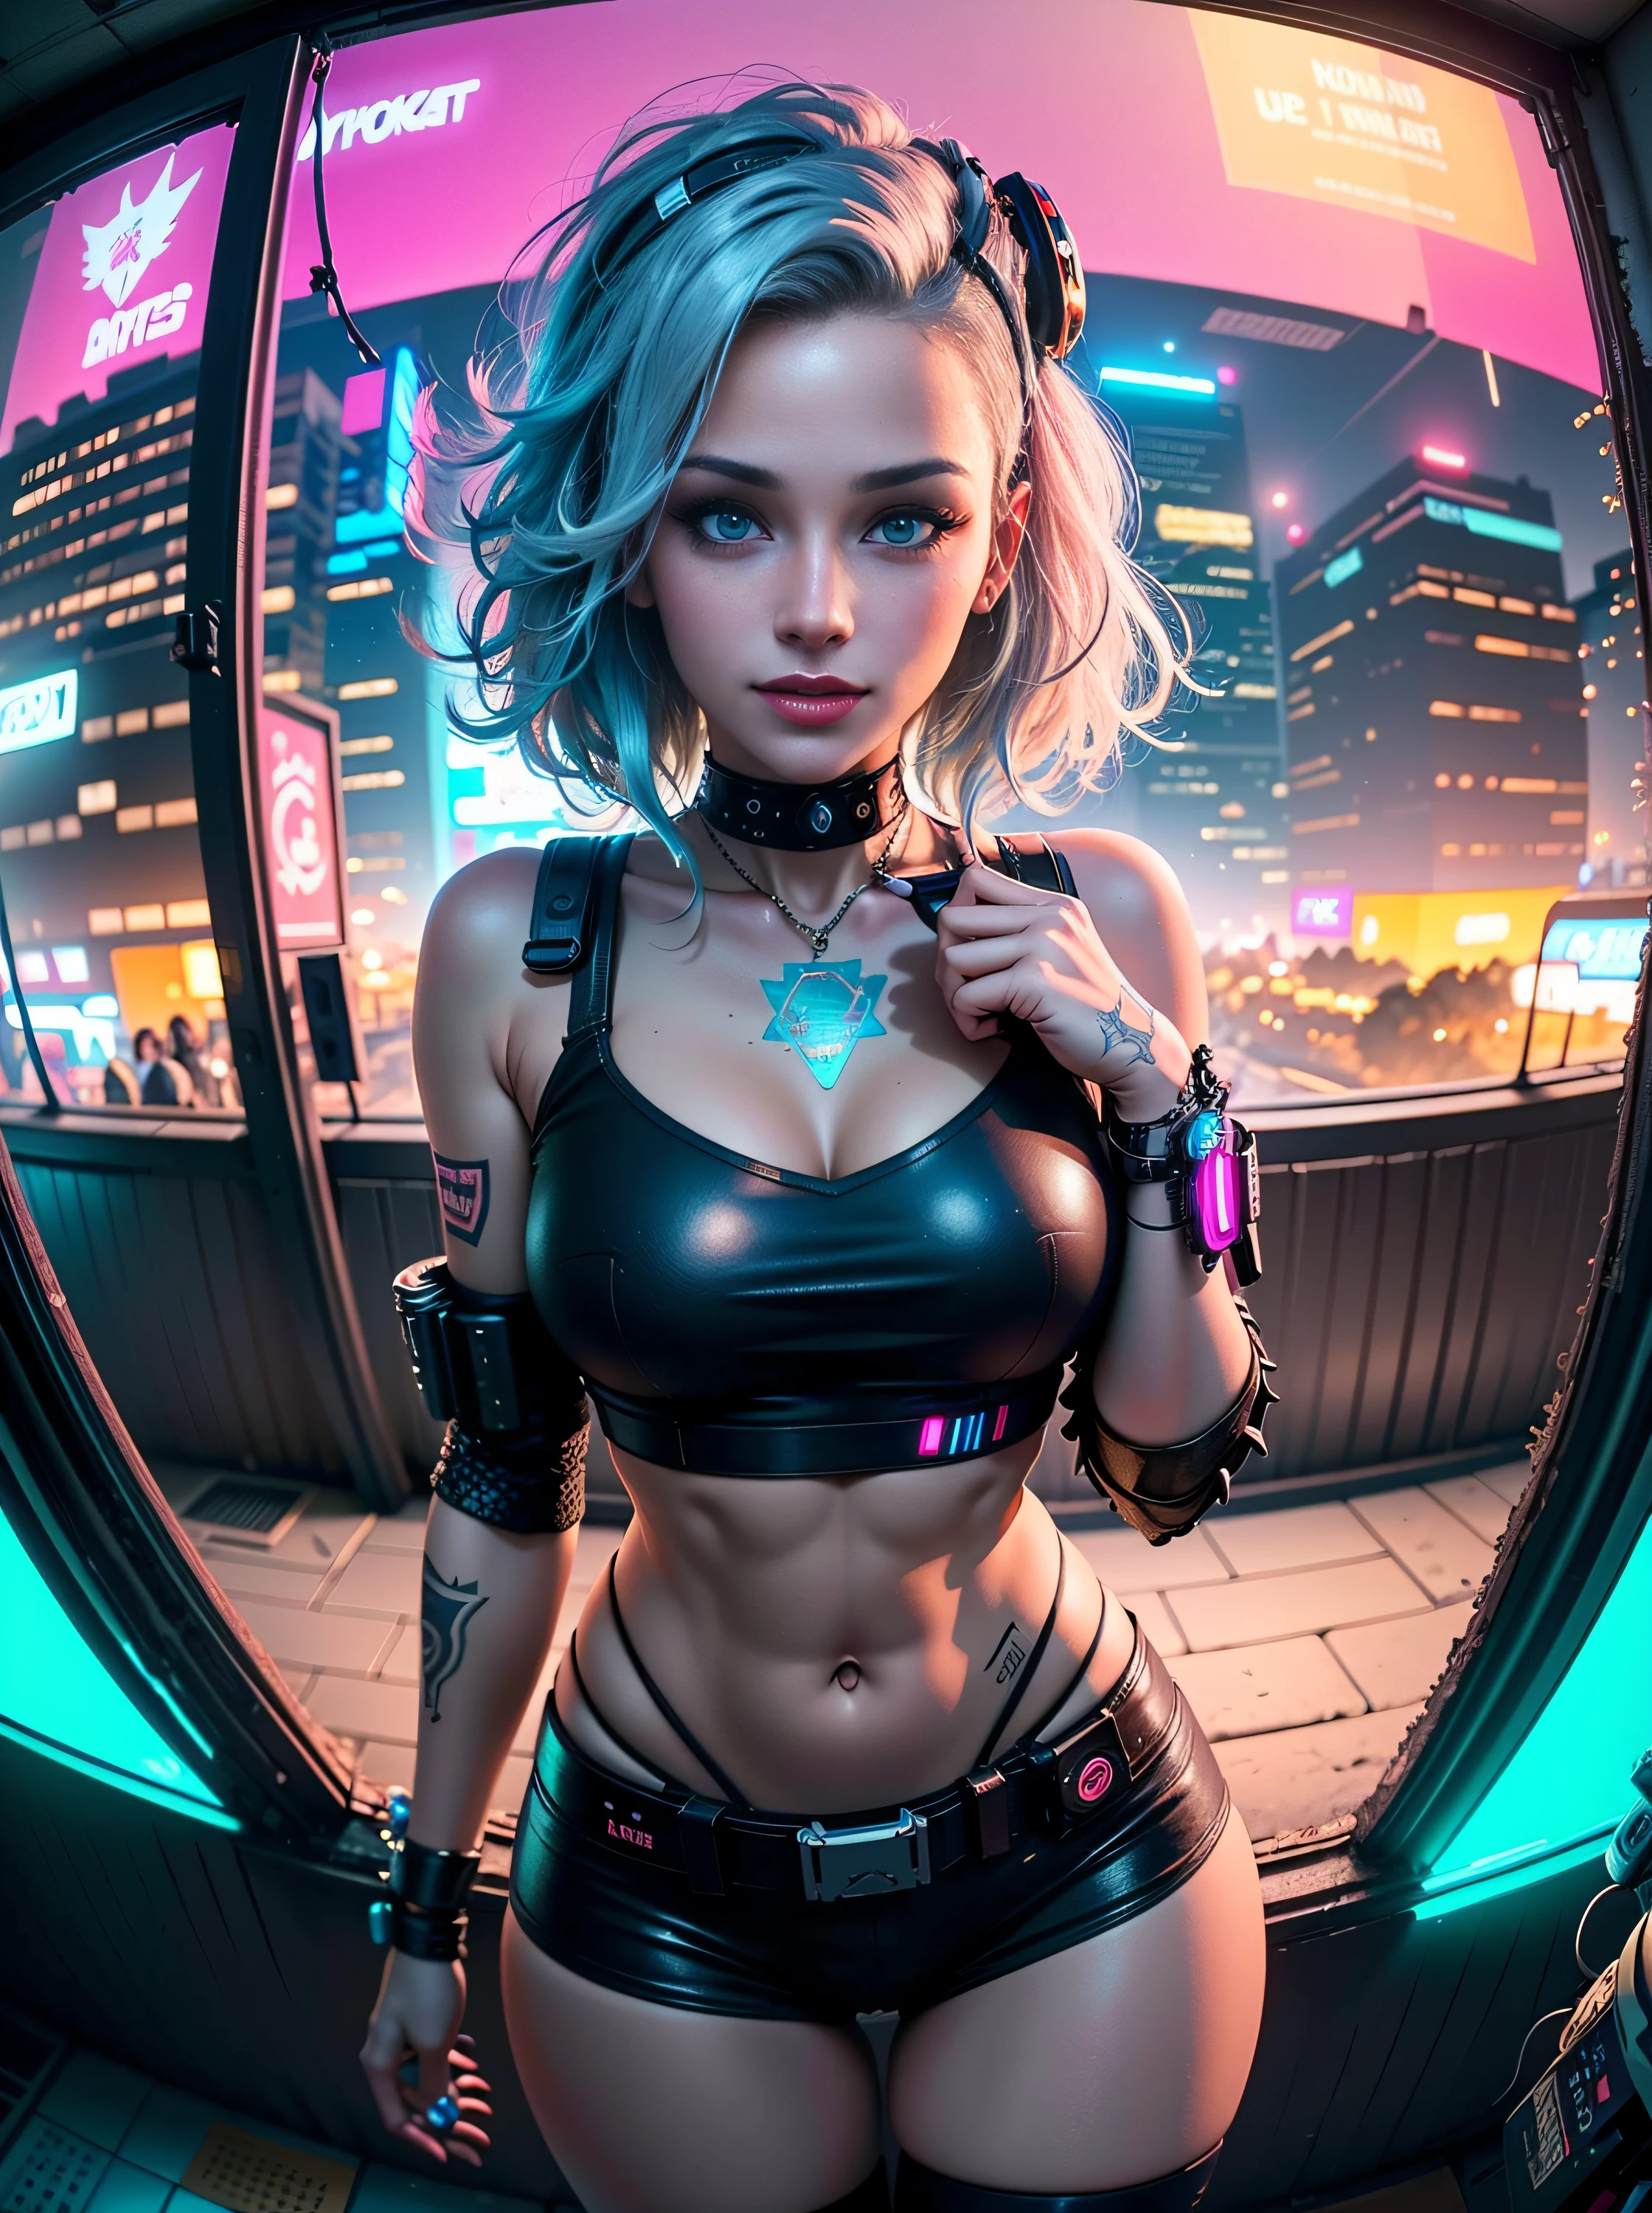 ((Garotas cyberpunk de 25 anos em uma roupa pop colorida de Harajuku)), ((((lente olho de peixe)))), tiro de vaqueiro, o vento, Pilha Real, Grandes olhos azuis, 8K, um rosto perfeito, o corpo perfeito, cabelo bagunçado, olhos altamente detalhados, rosto altamente detalhado, ((Paisagem urbana de Cyberpunk 2077)), (Estética e atmosfera cyberpunk:1.3), cores brilhantes, sorridente, ((iluminação cinematográfica))